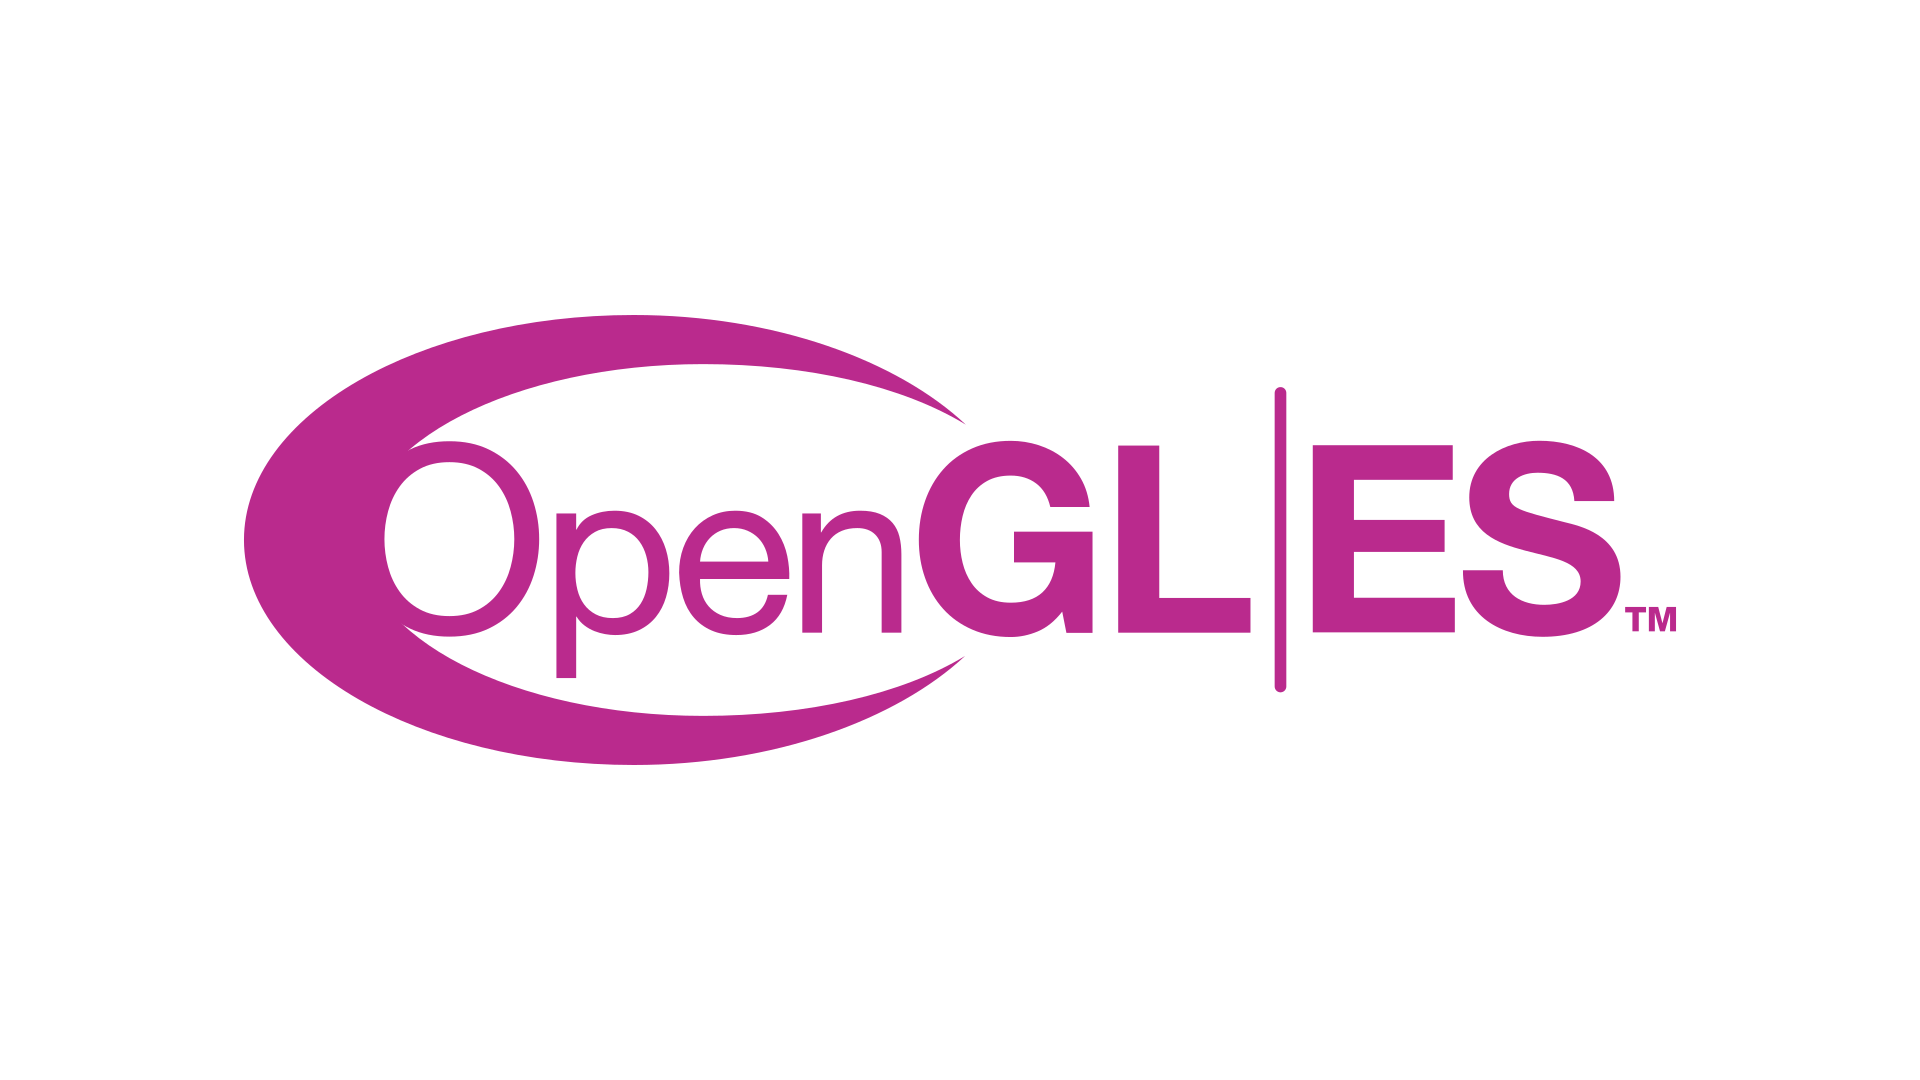 opengl es 2.0 multiple render buffers